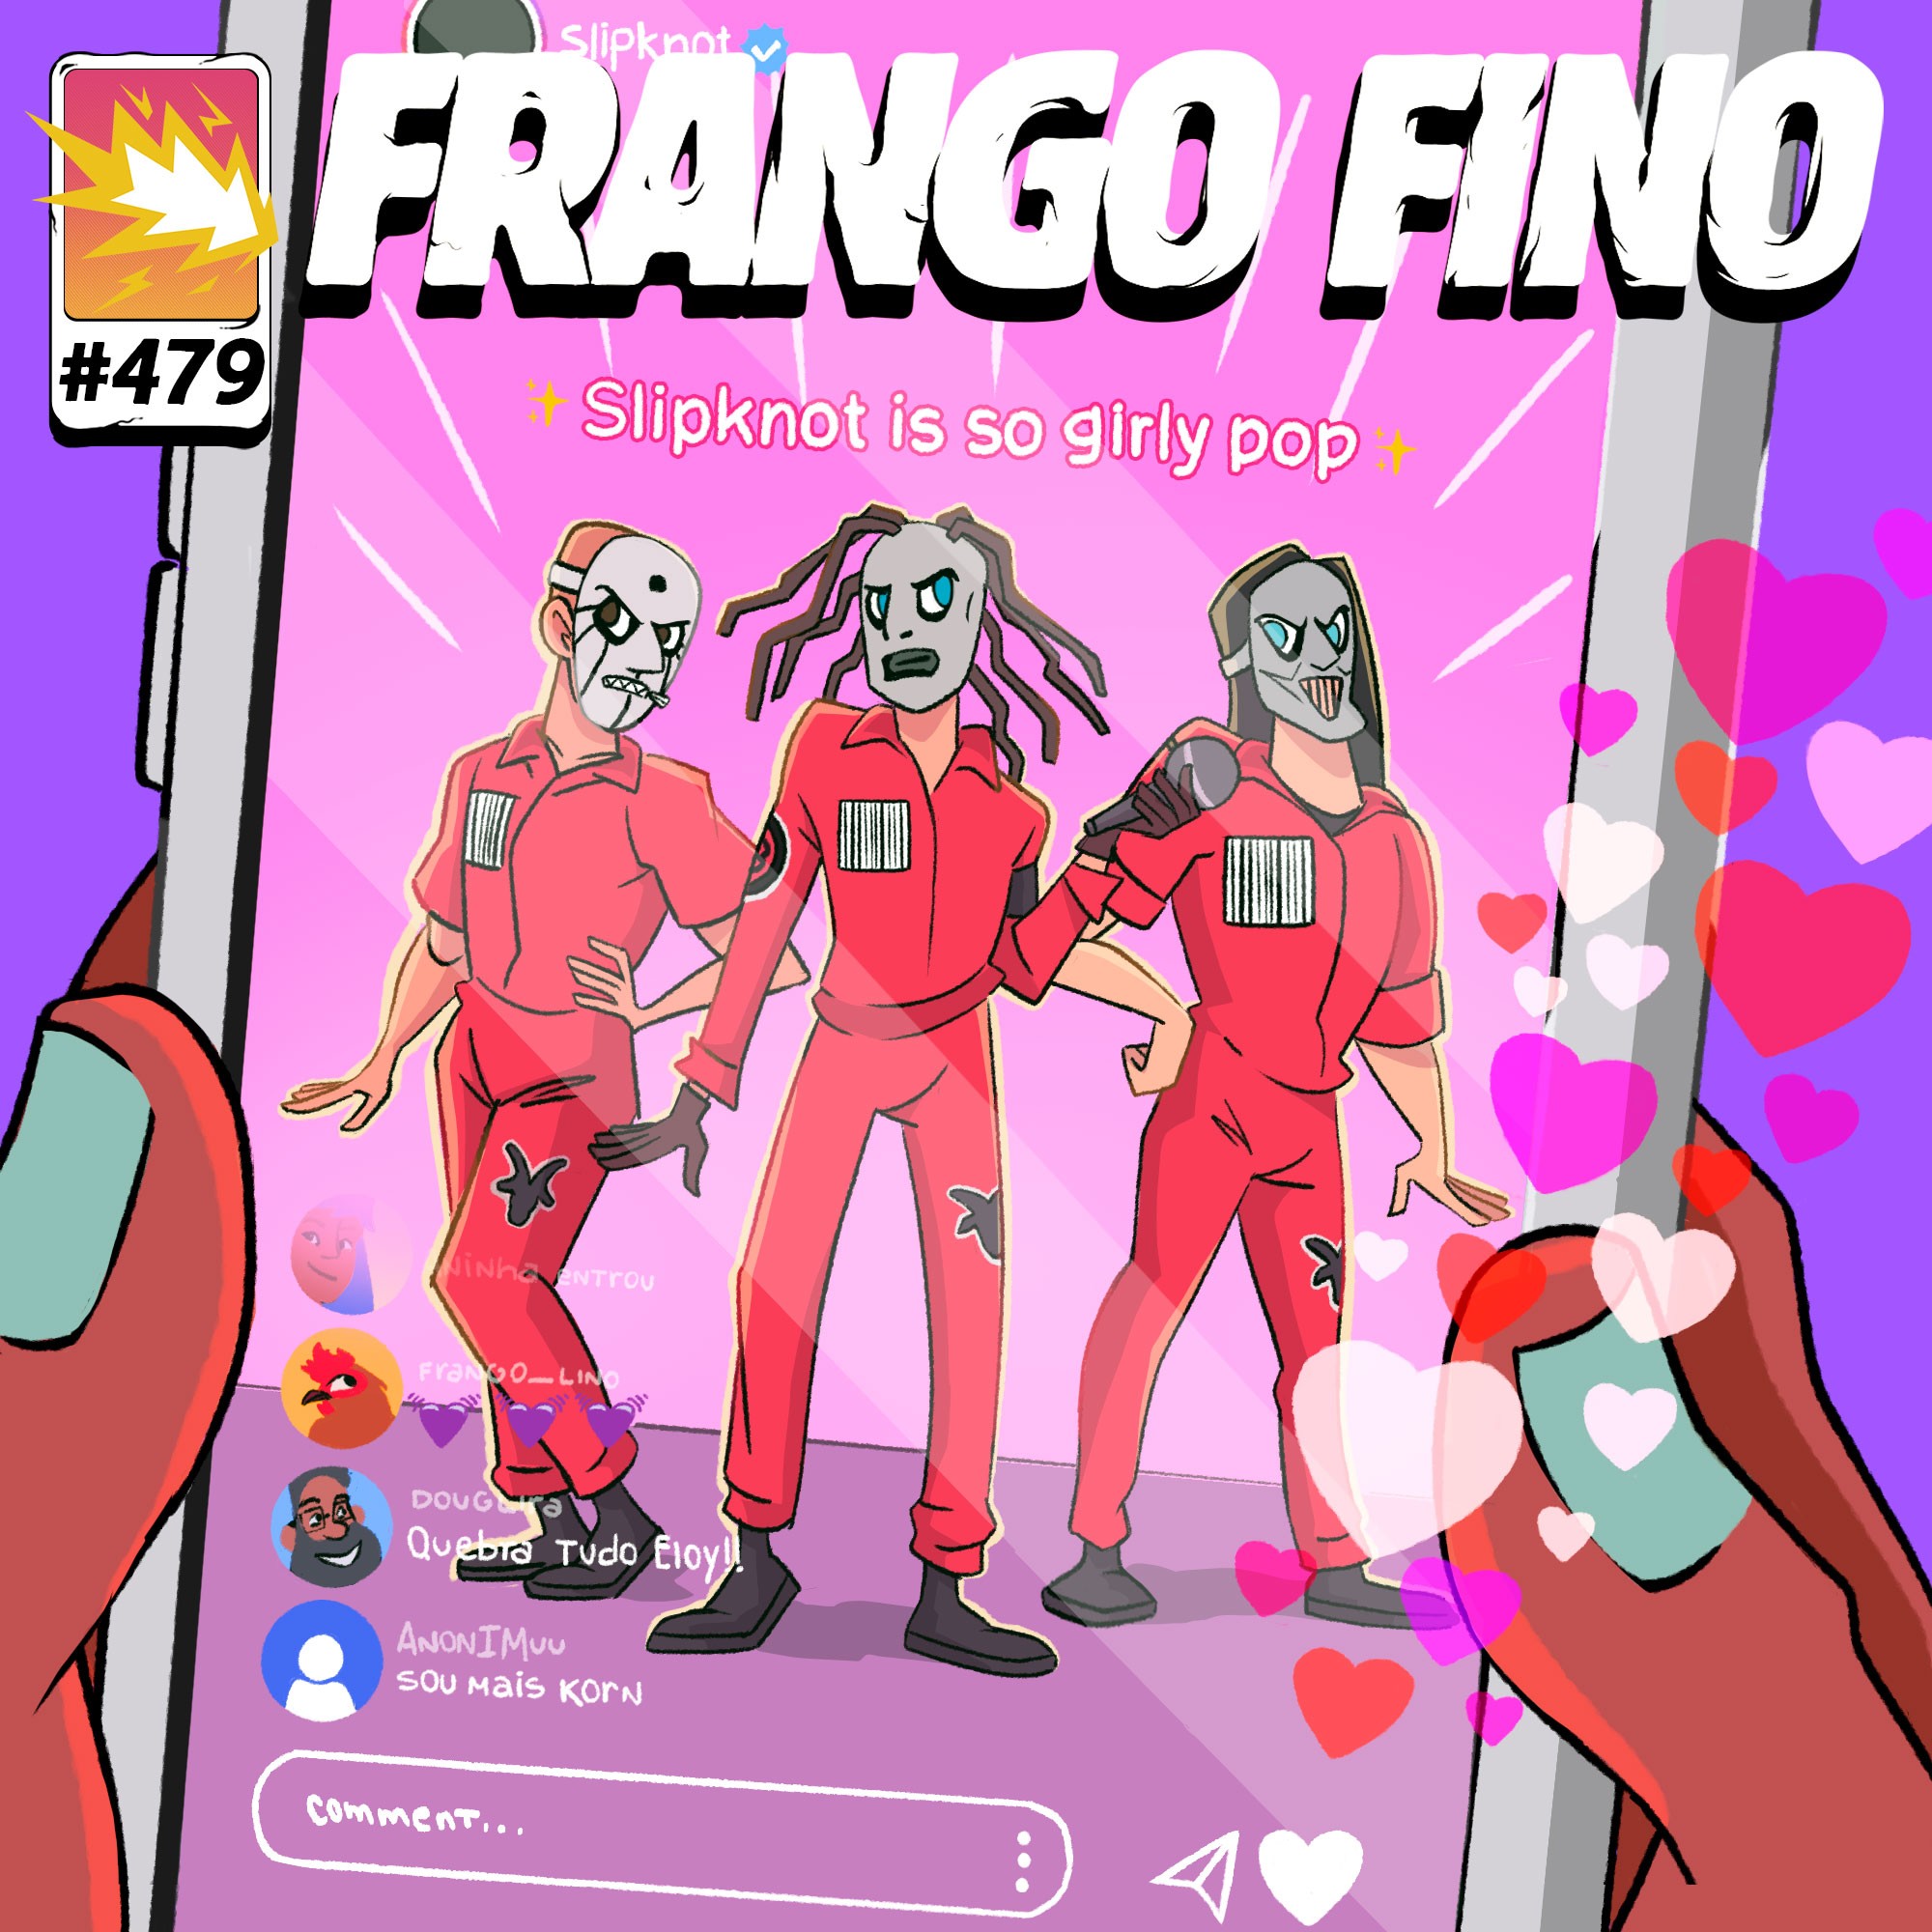 FRANGO FINO 479 | NU METAL PARA DANÇAR